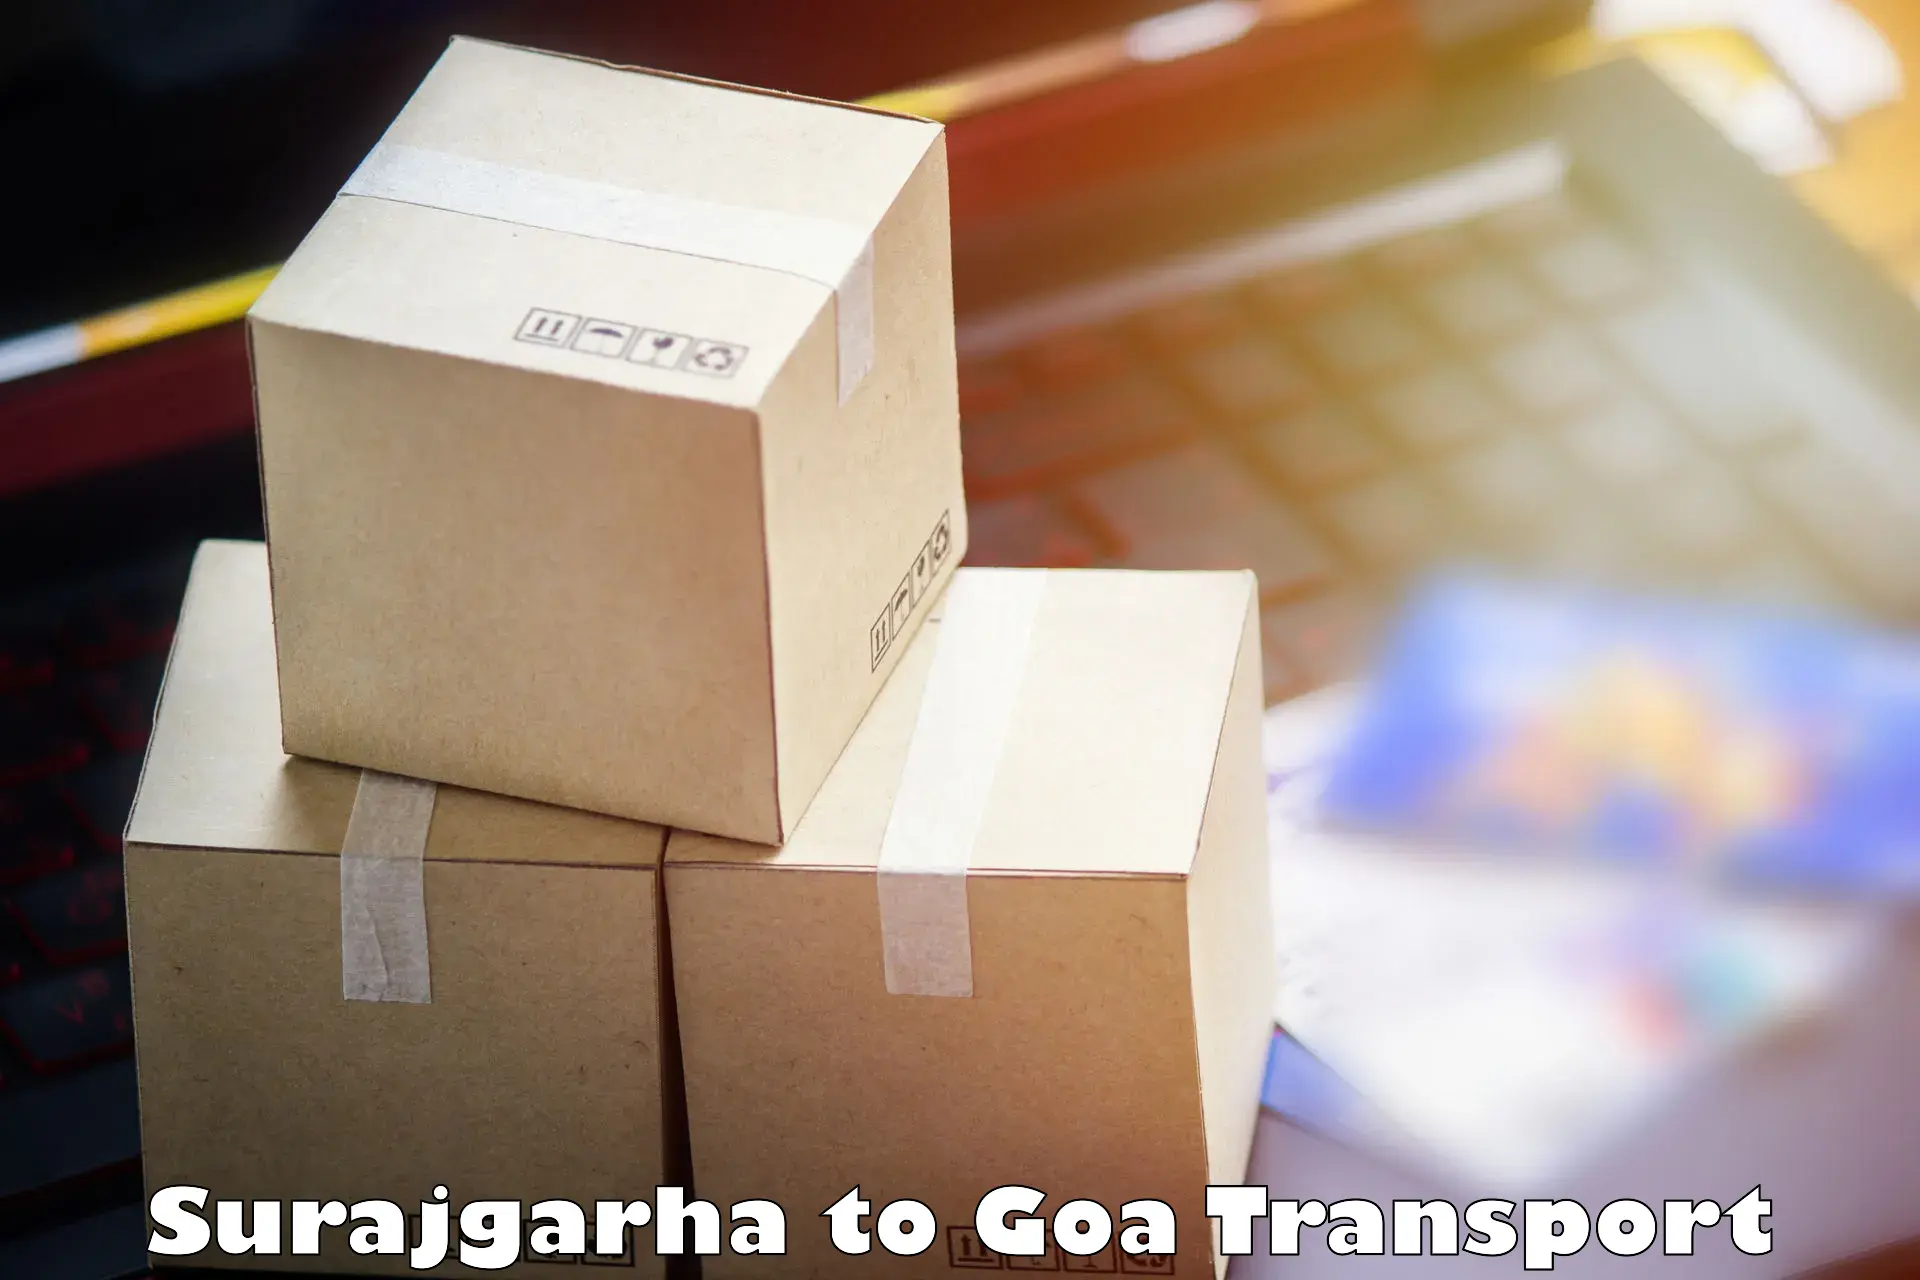 Delivery service Surajgarha to Goa